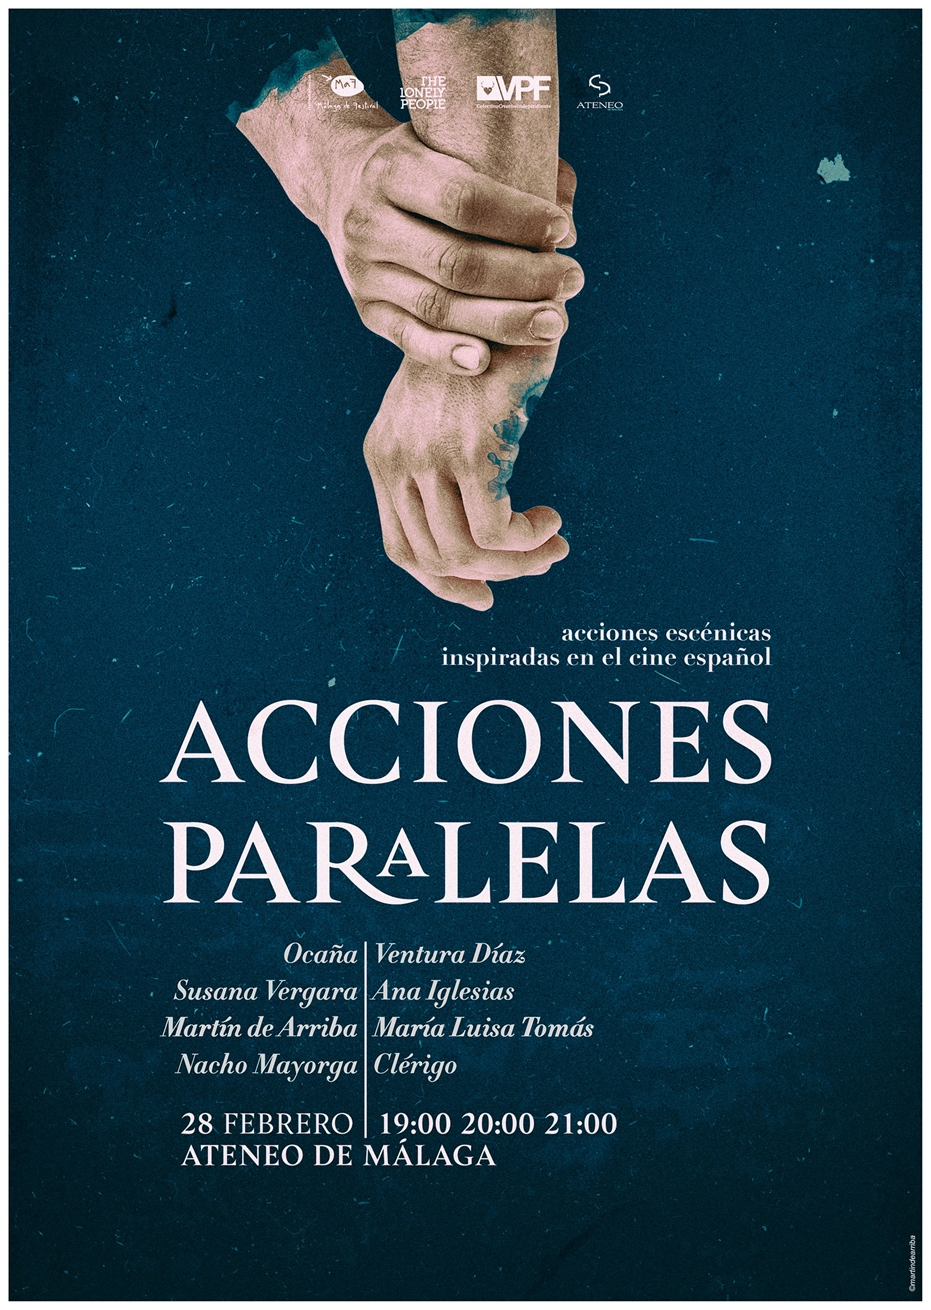 Acciones paralelas. Homenaje escénico al cine español